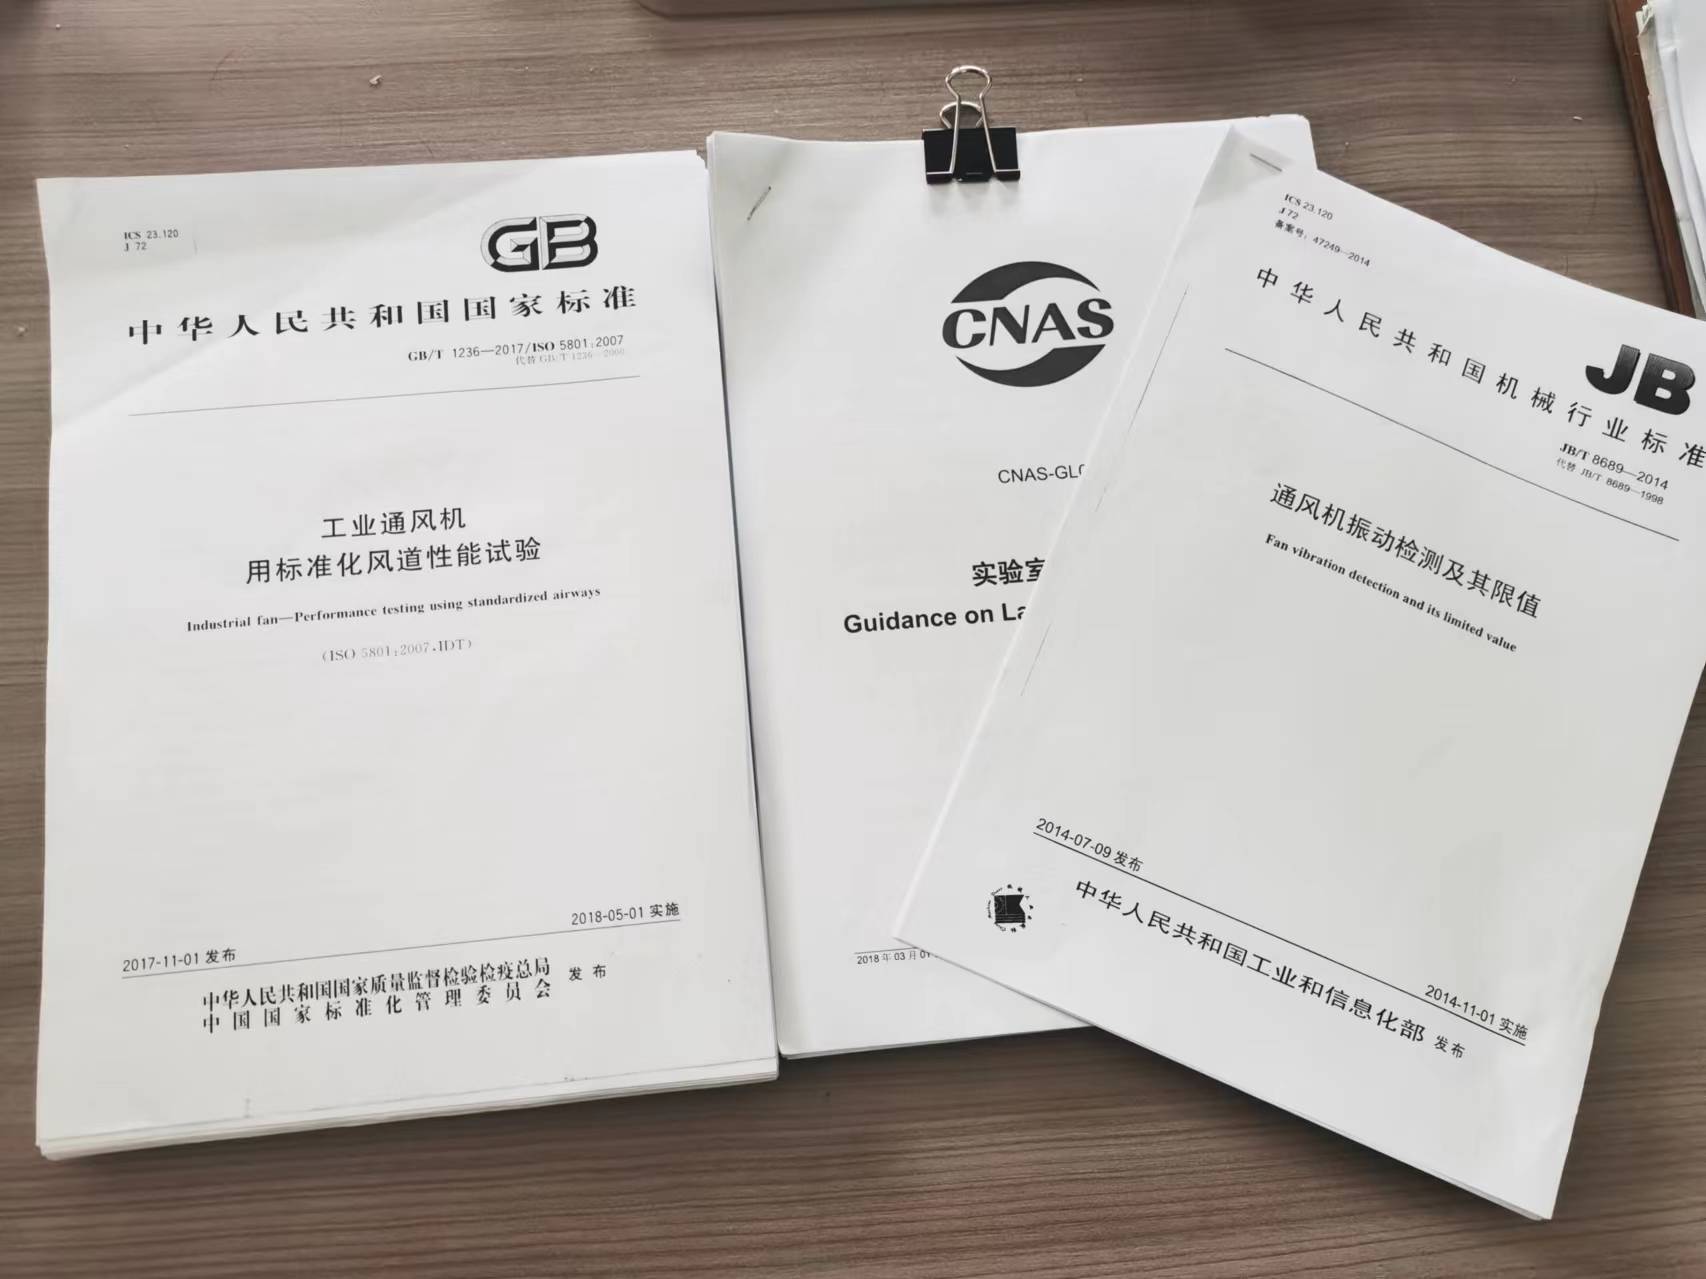 Zhejiang Pengxiang HVAC Equipment Co., Ltd. Centro de testes se aplica ao credenciamento CNAS